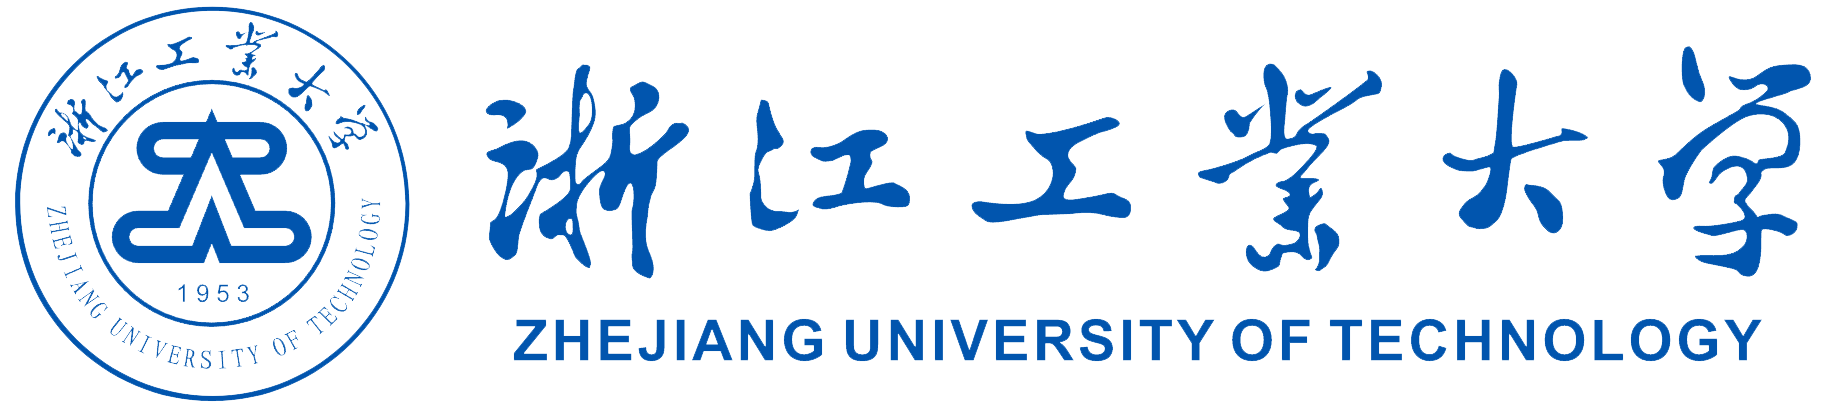 AUT-logo.png